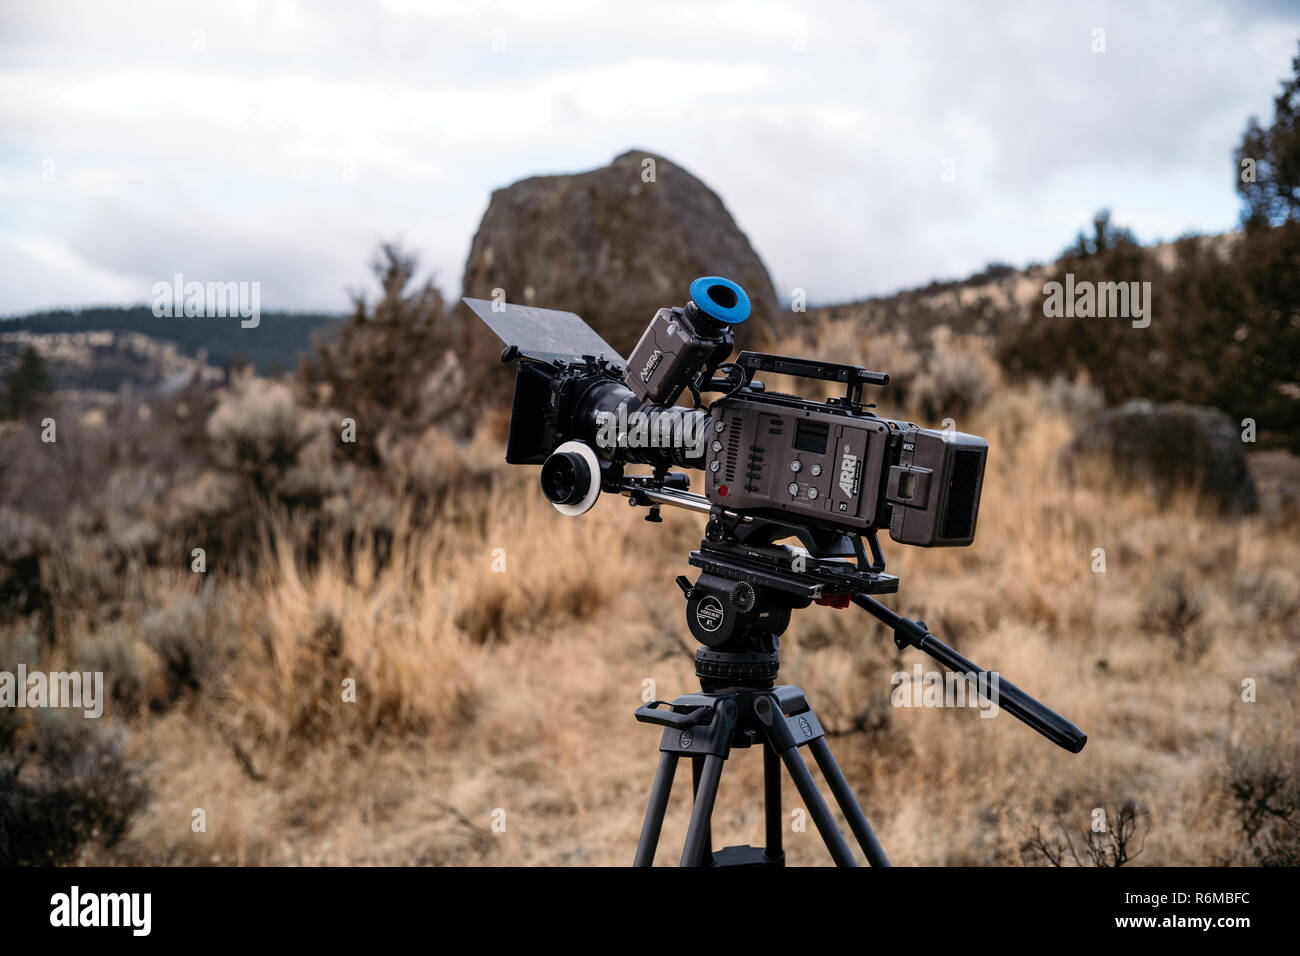 Filmmaking equipment for beginners